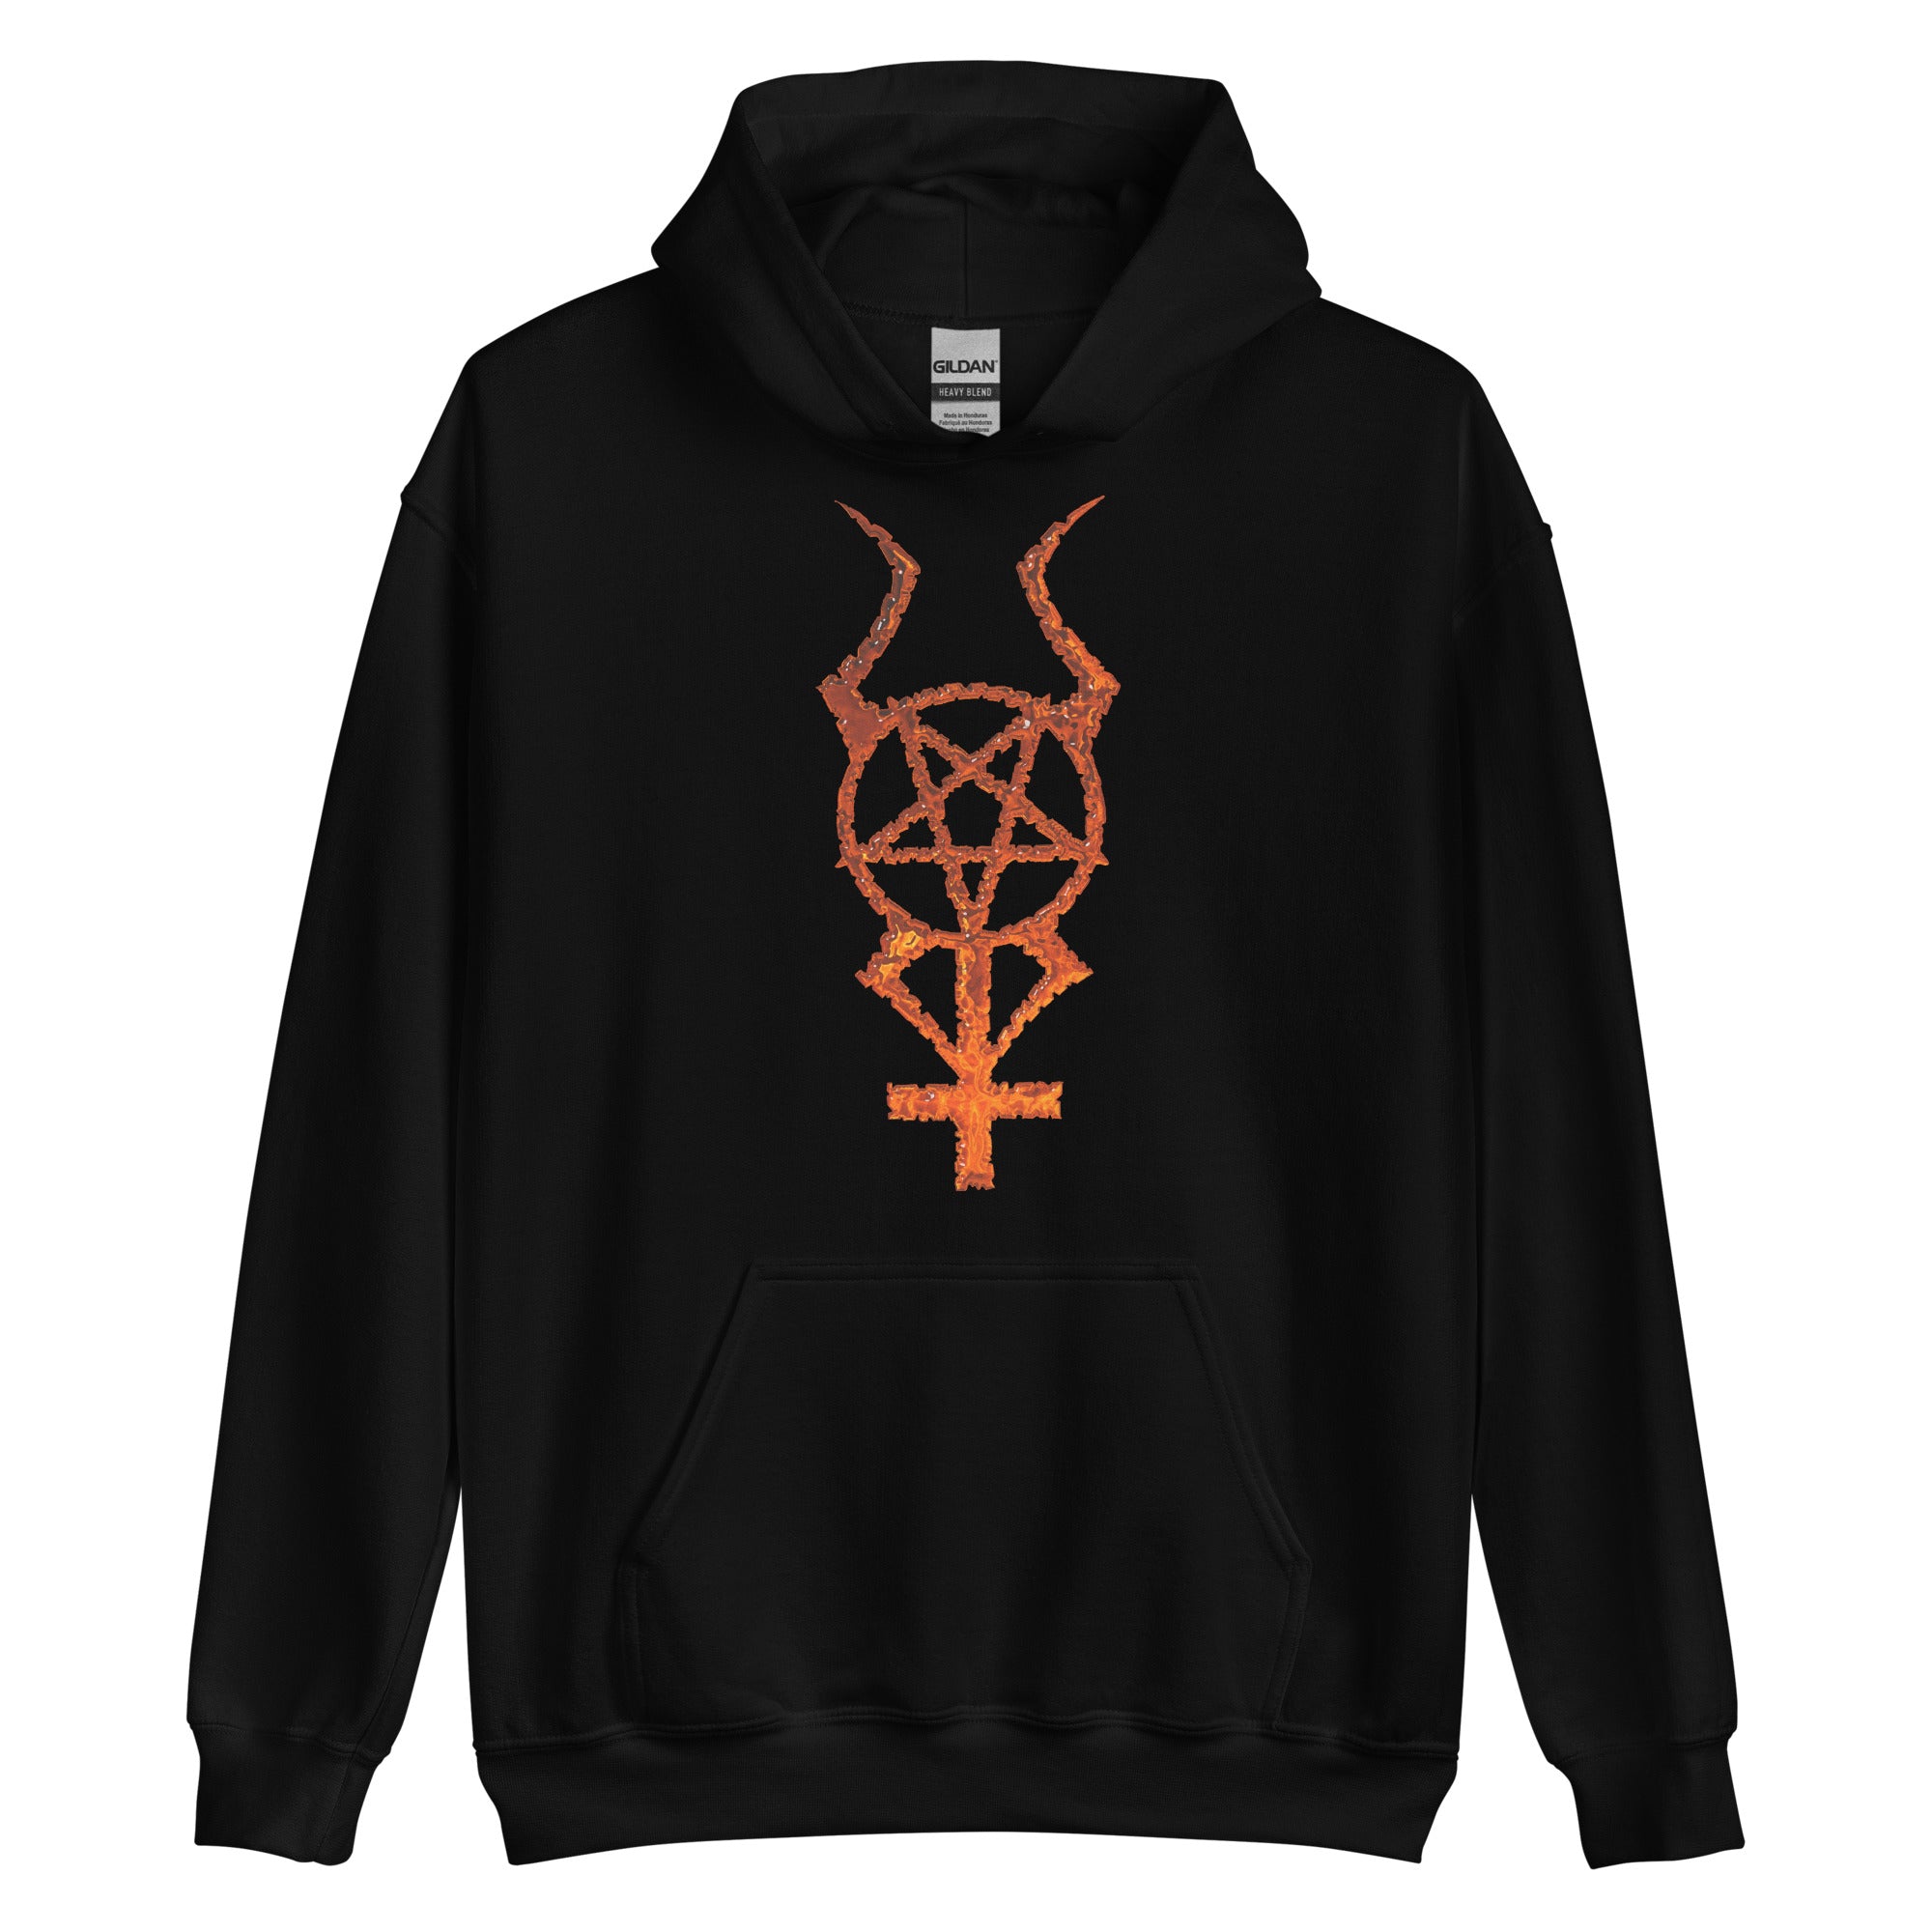 Flame Horned Pentacross Pentagram Cross Unisex Hoodie Sweatshirt - Edge of Life Designs